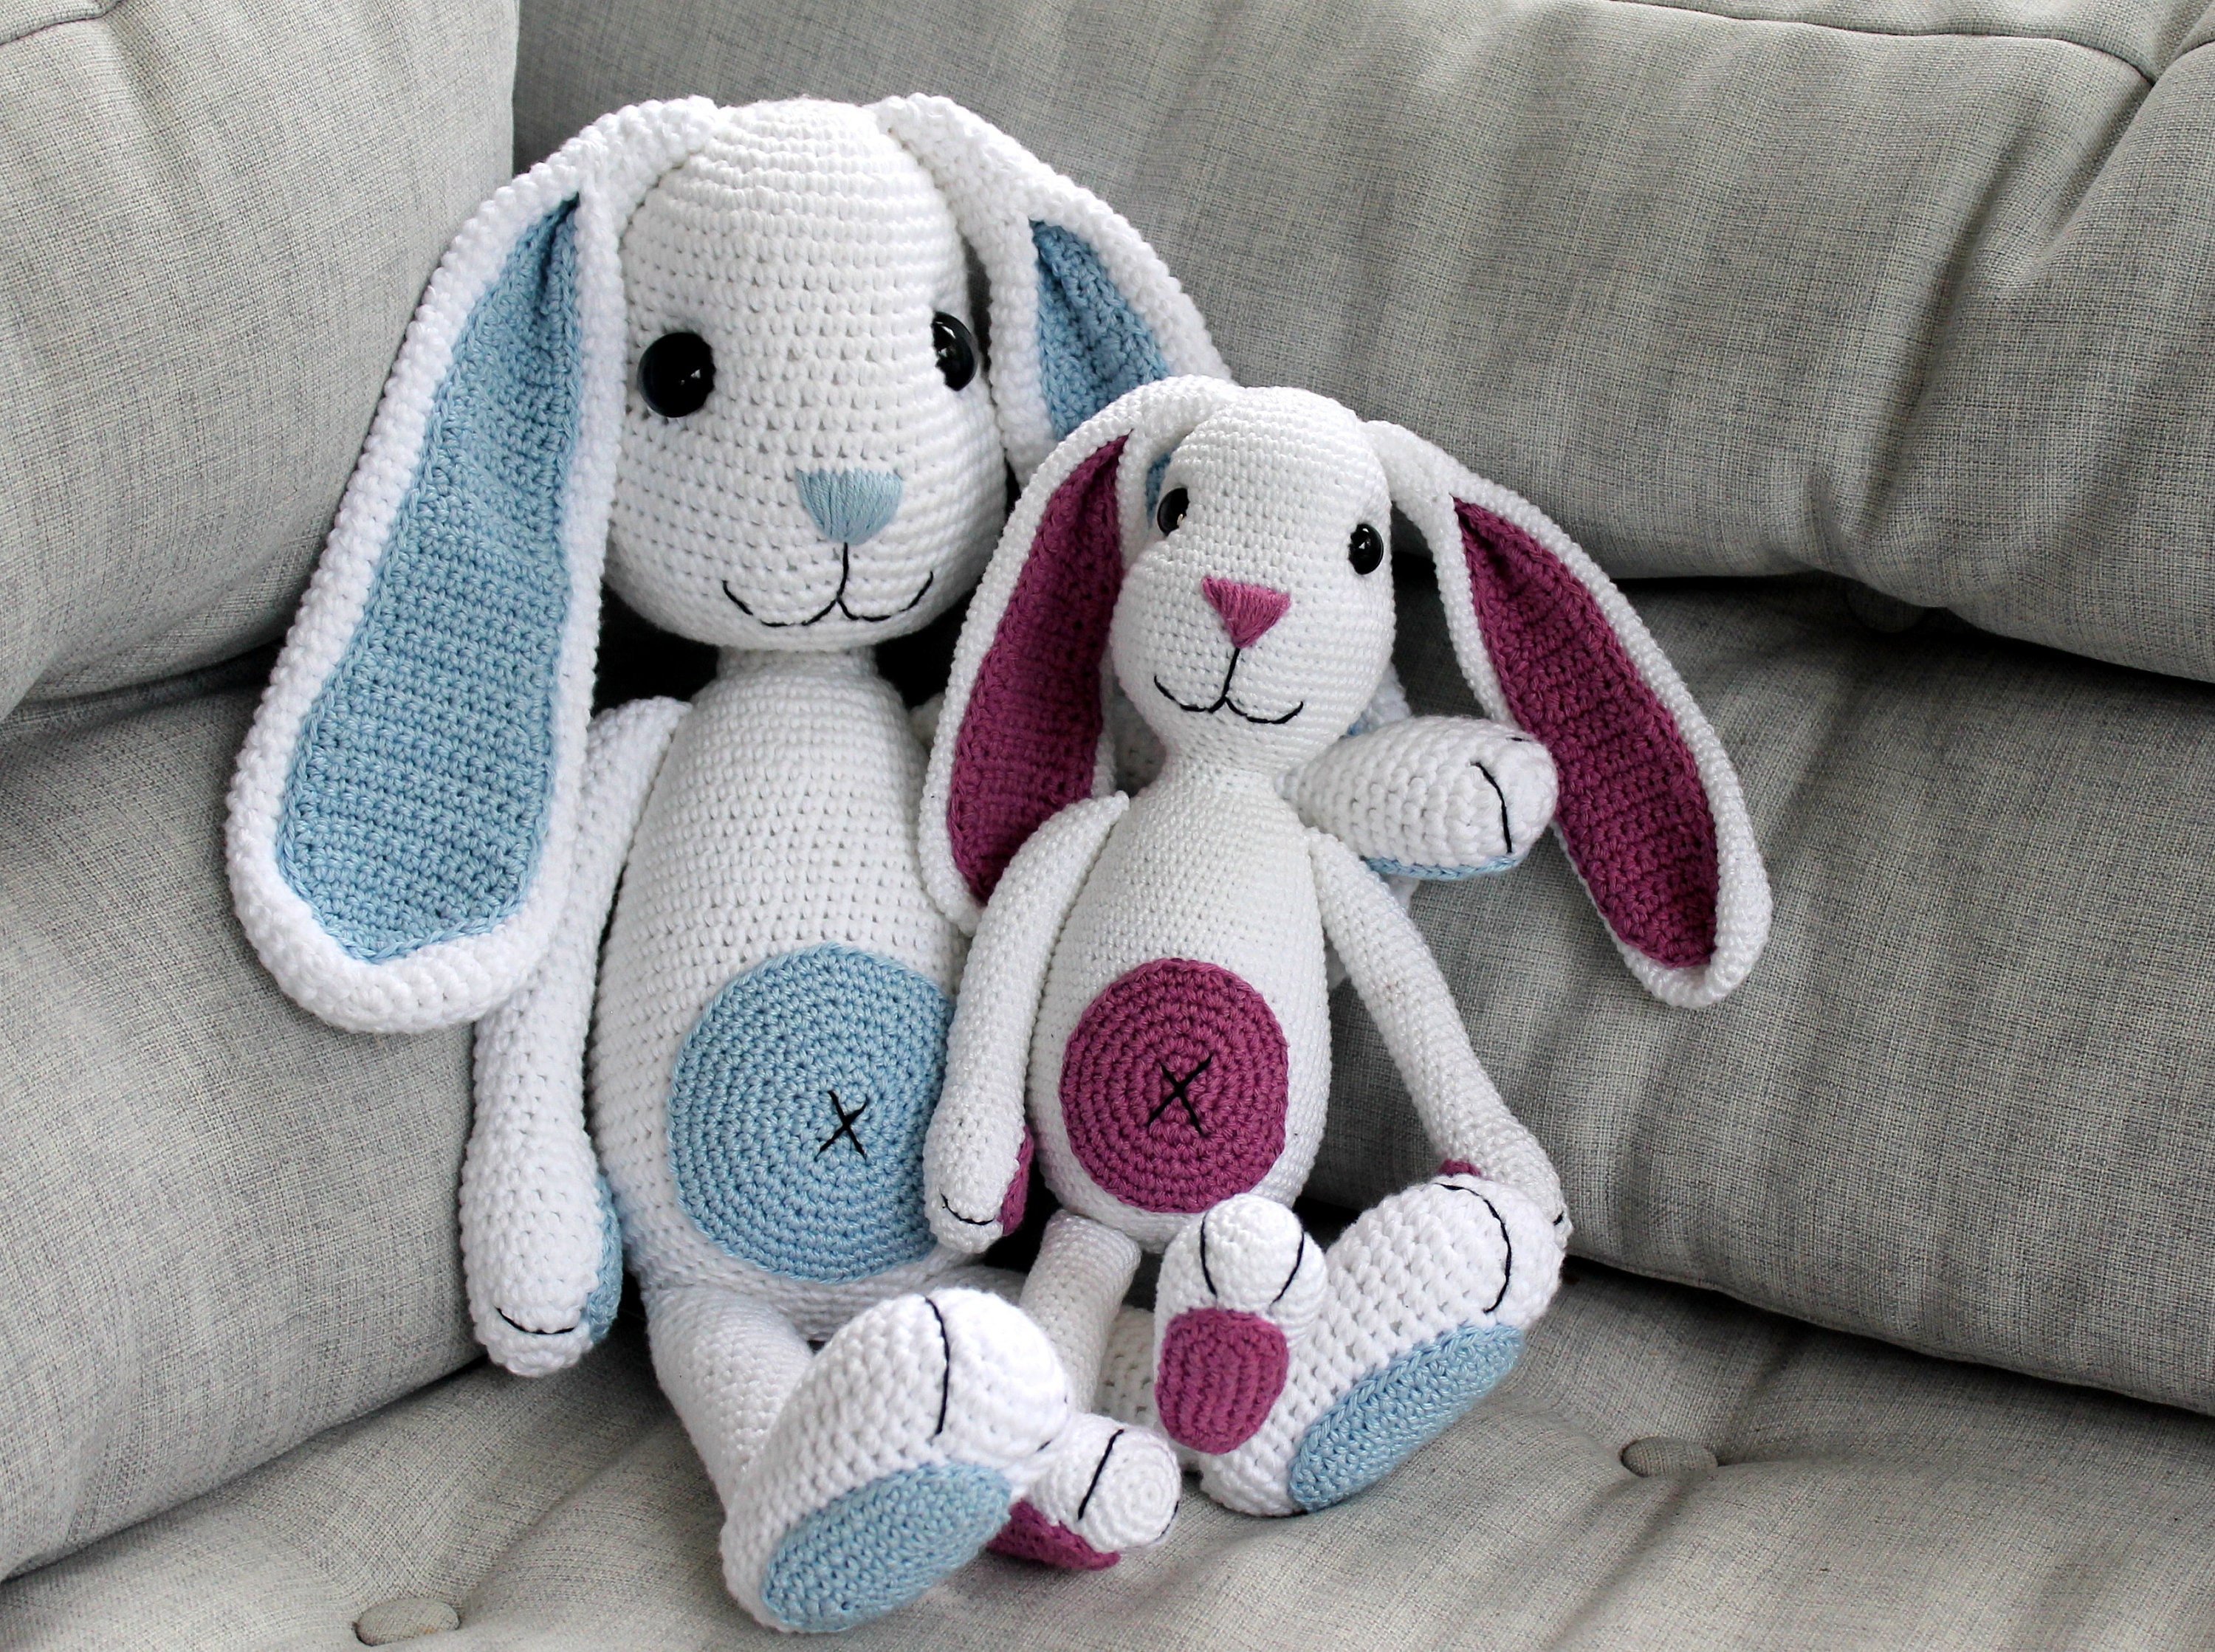 Kit crochet - Henry & Henriette